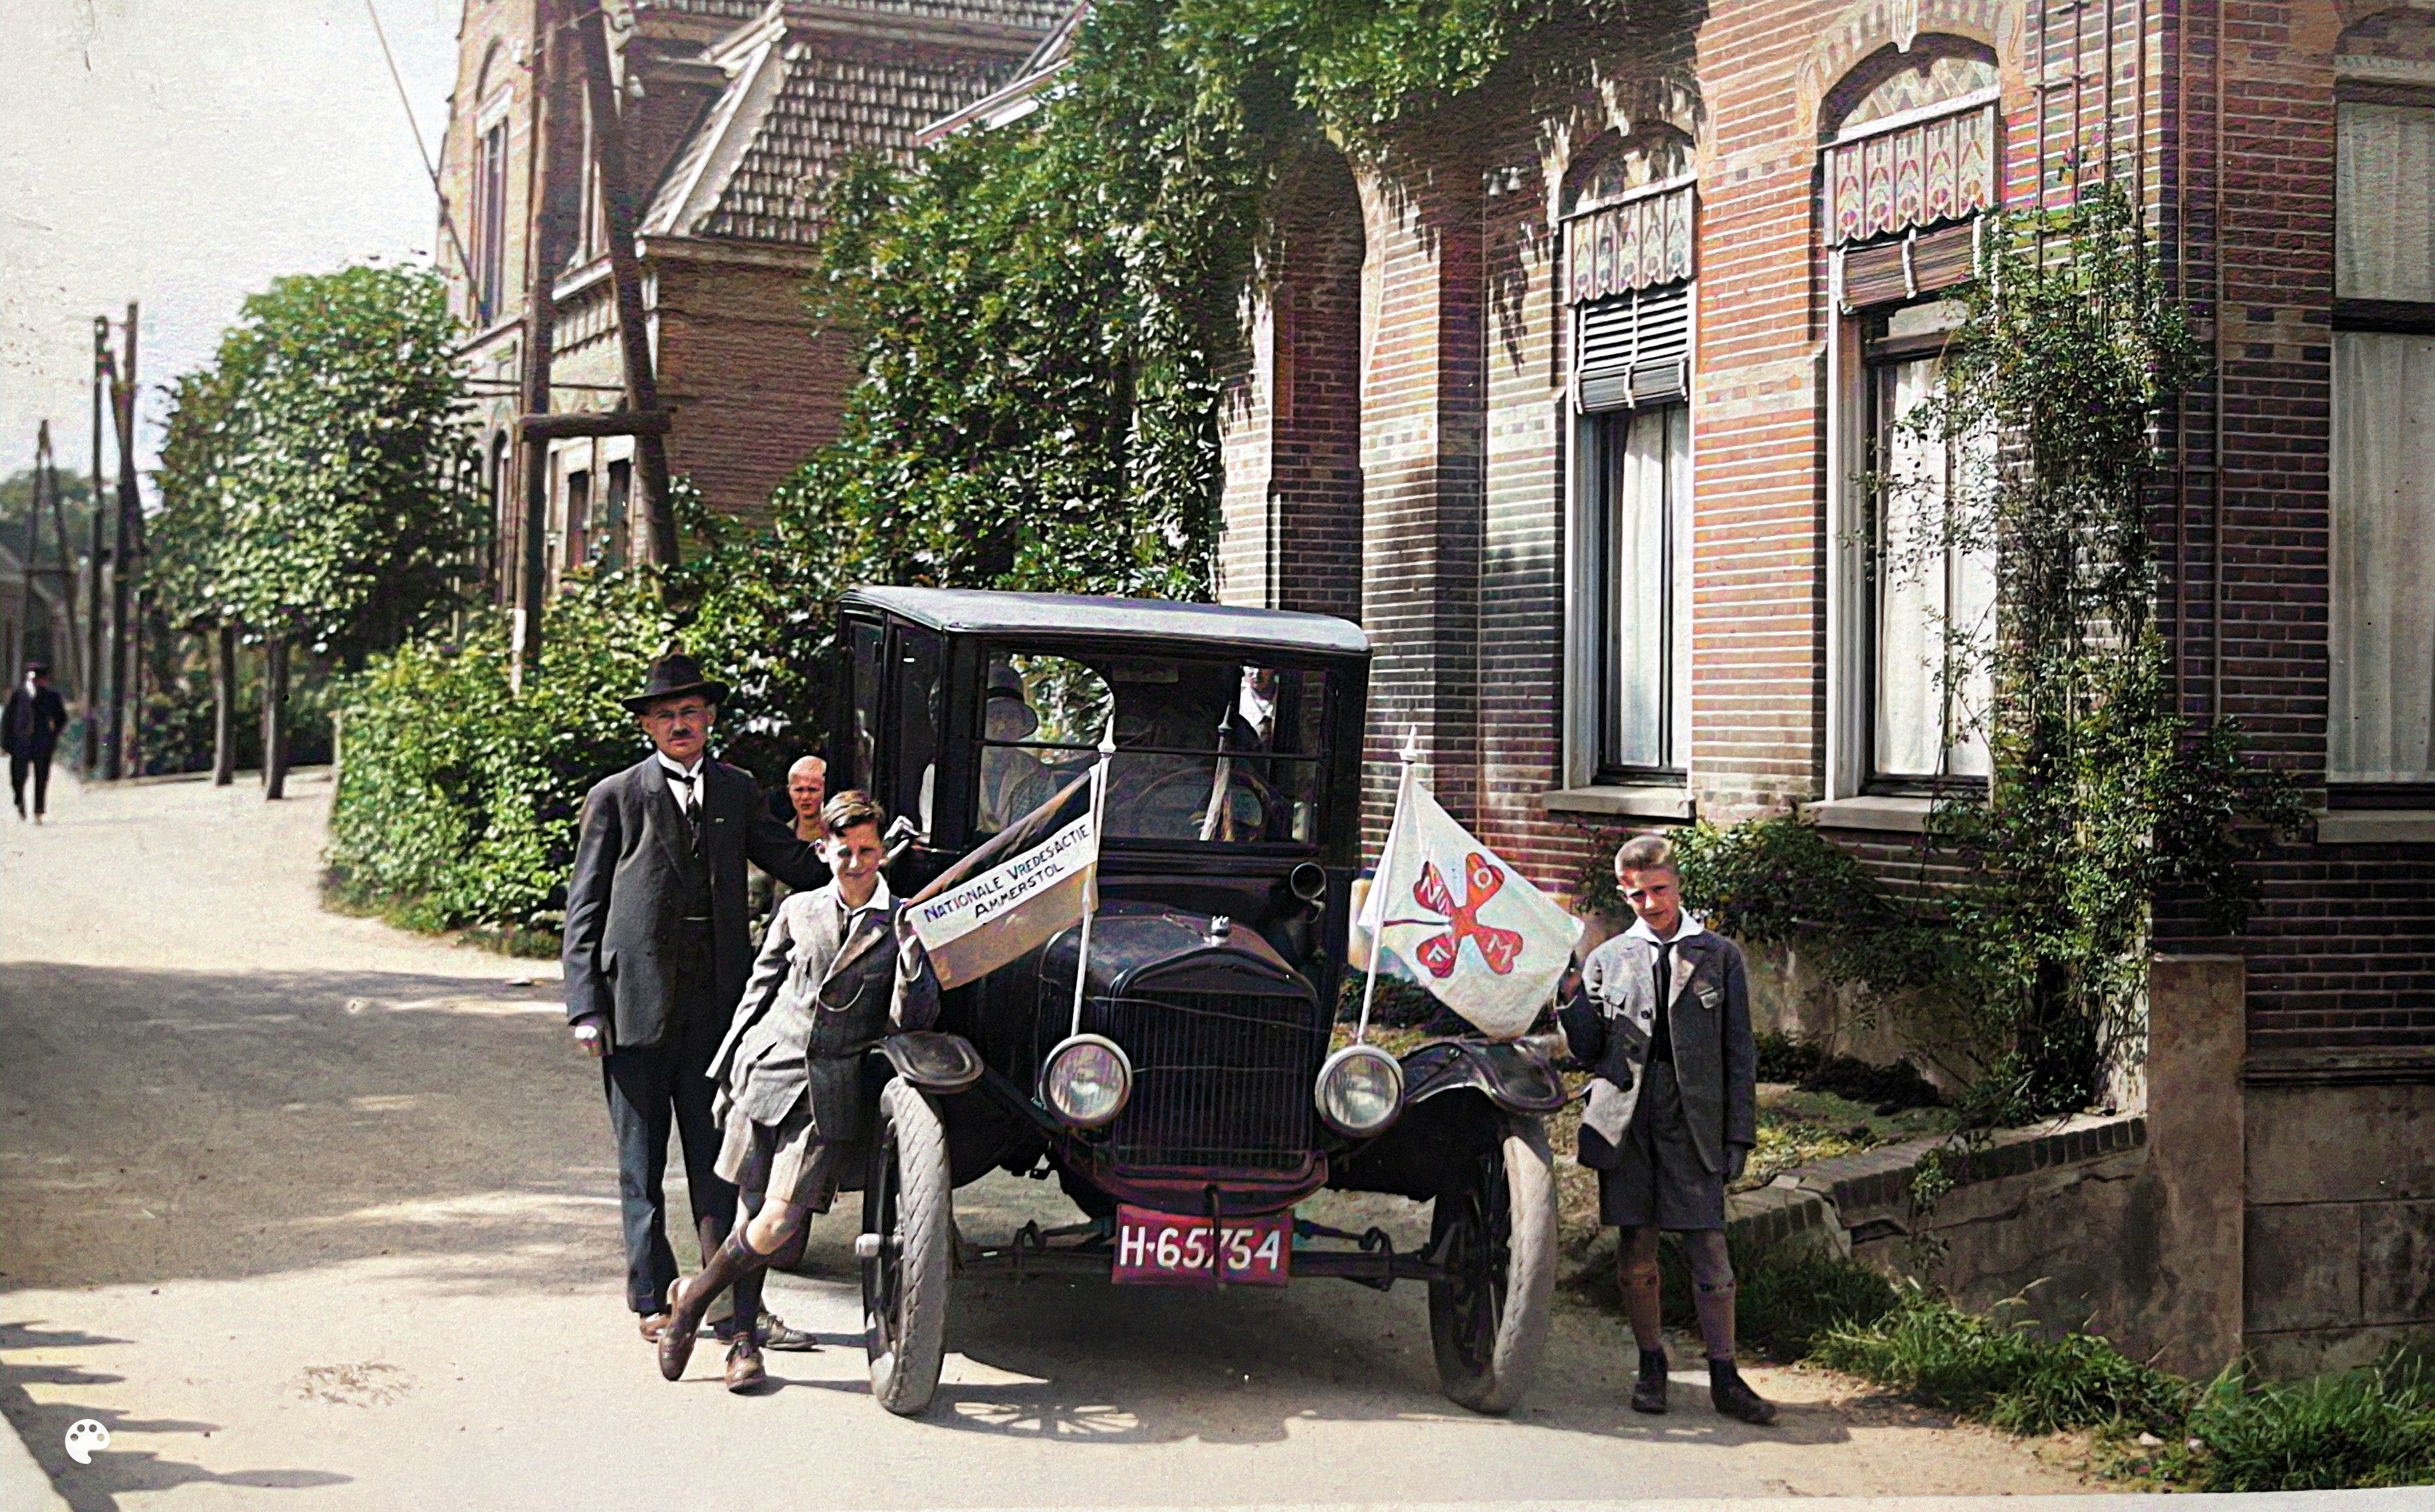 In de jaren 1927 en 1928 maakte hij samen met zijn vrouw en twee zoons een vredesautotocht door Nederland en België. Hiermee hoopte hij het vredeswerk grotere bekendheid te geven. (ingekleurde foto)